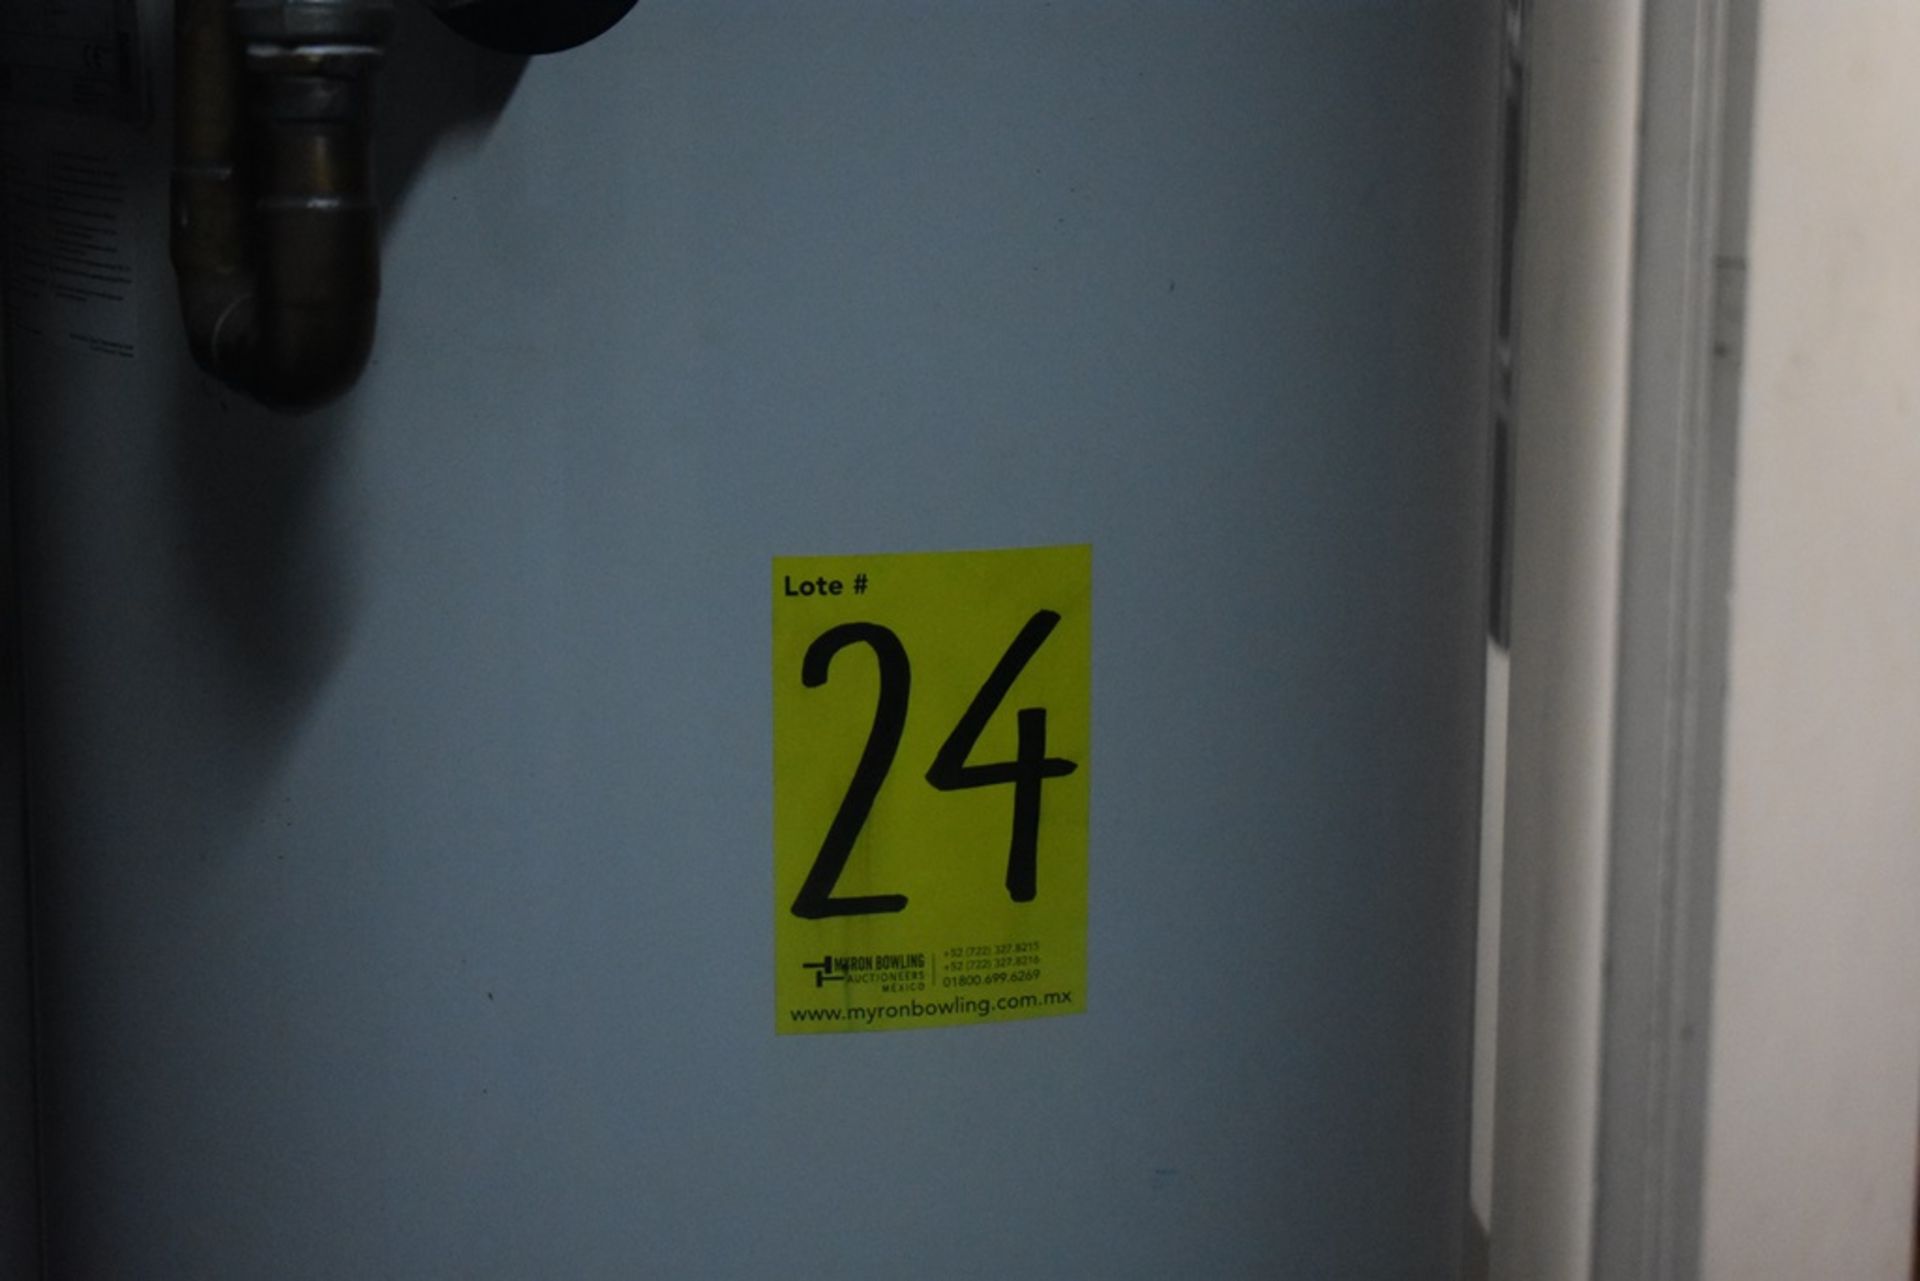 Sistema de filtración de agua marca Lalvaky, que incluye un sistema hidroneumático marca Pedrollo, - Image 34 of 40